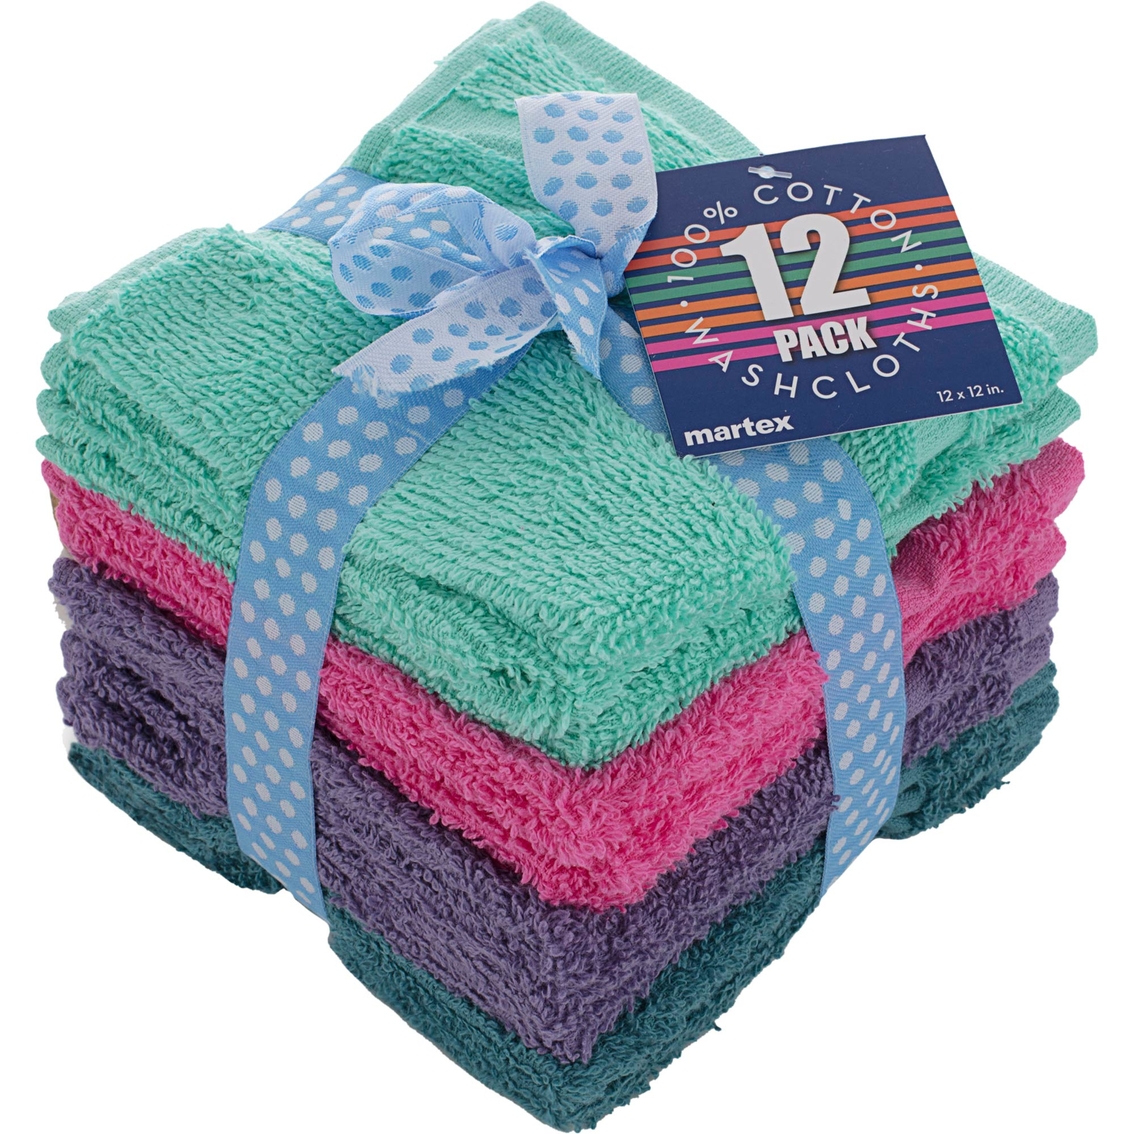 Martex Washcloth Set 12 Pk. | Bath Towels | Home ...